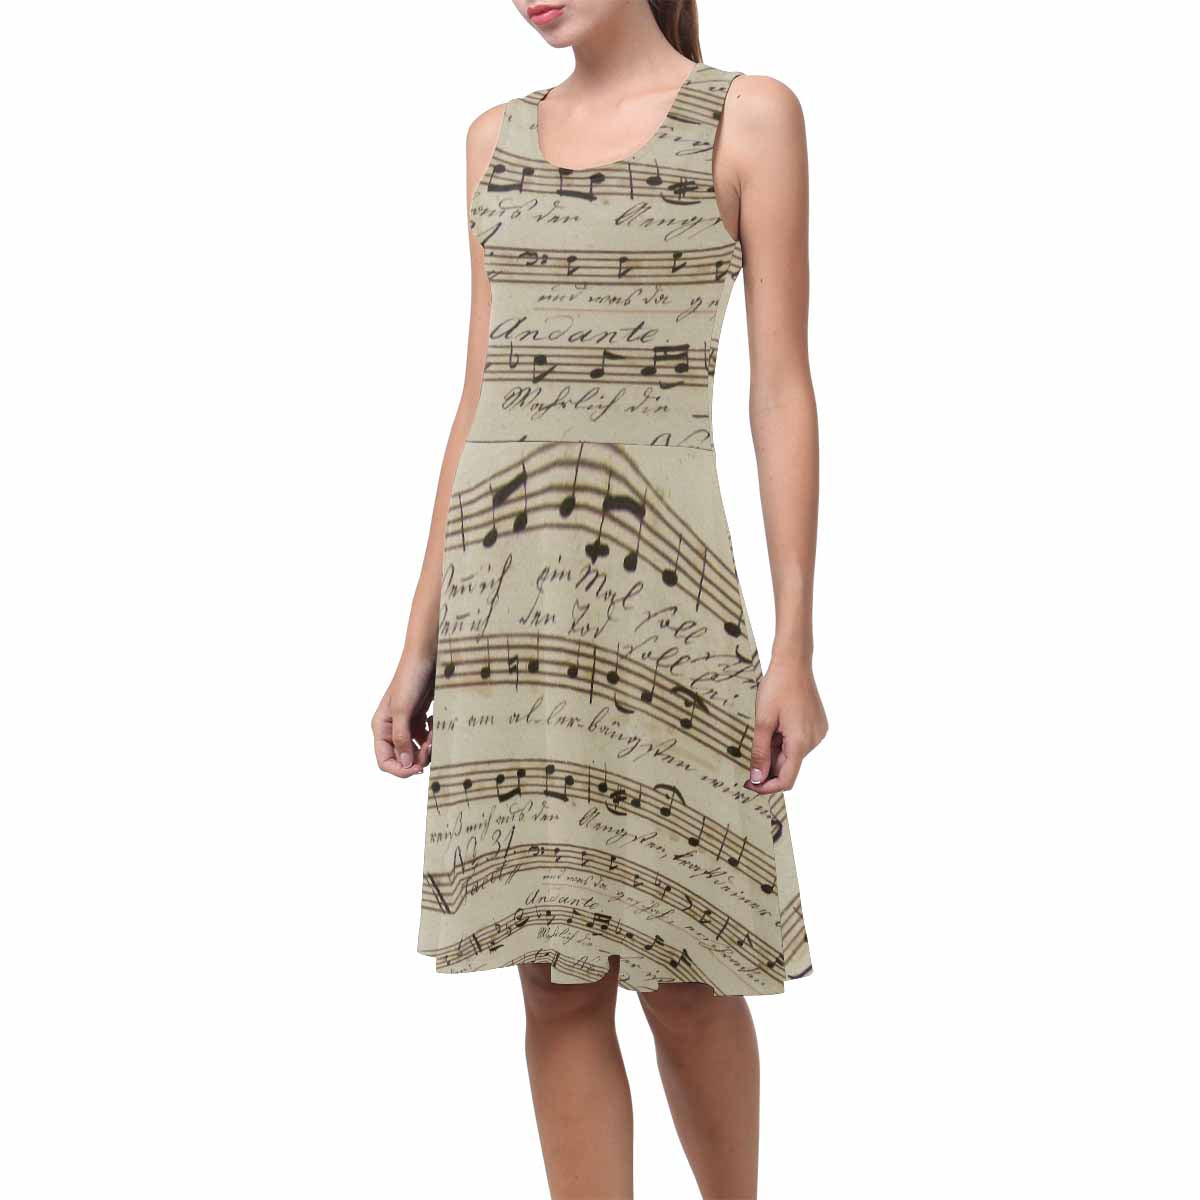 Antique General summer dress, MODEL 09534, design 20